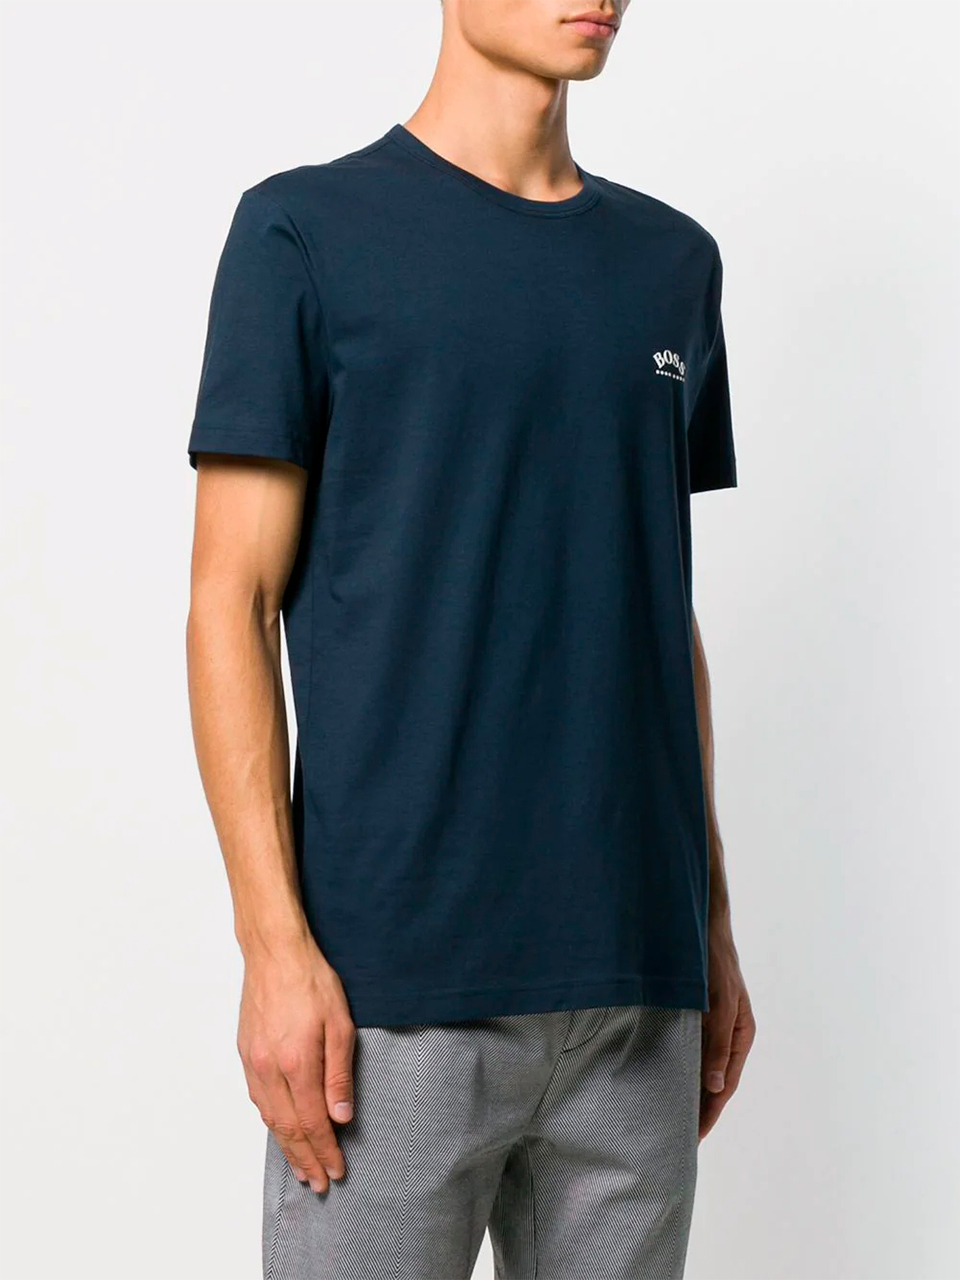 Imagem de: Camiseta BOSS Azul Marinho com Logo Branco